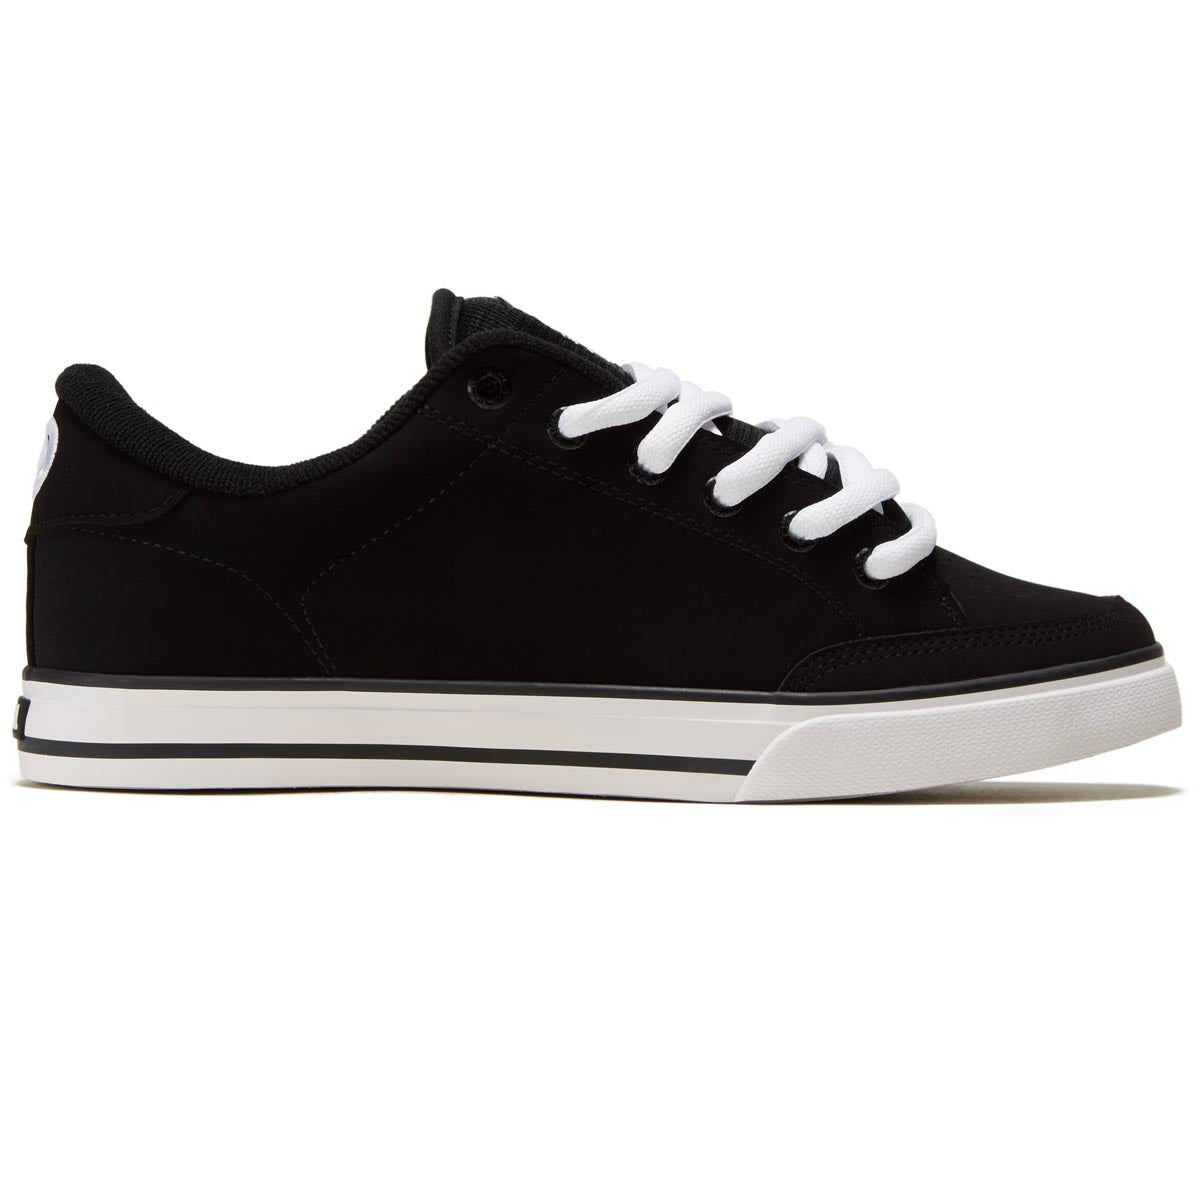 C1rca AL 50 Shoes - Black/White image 1